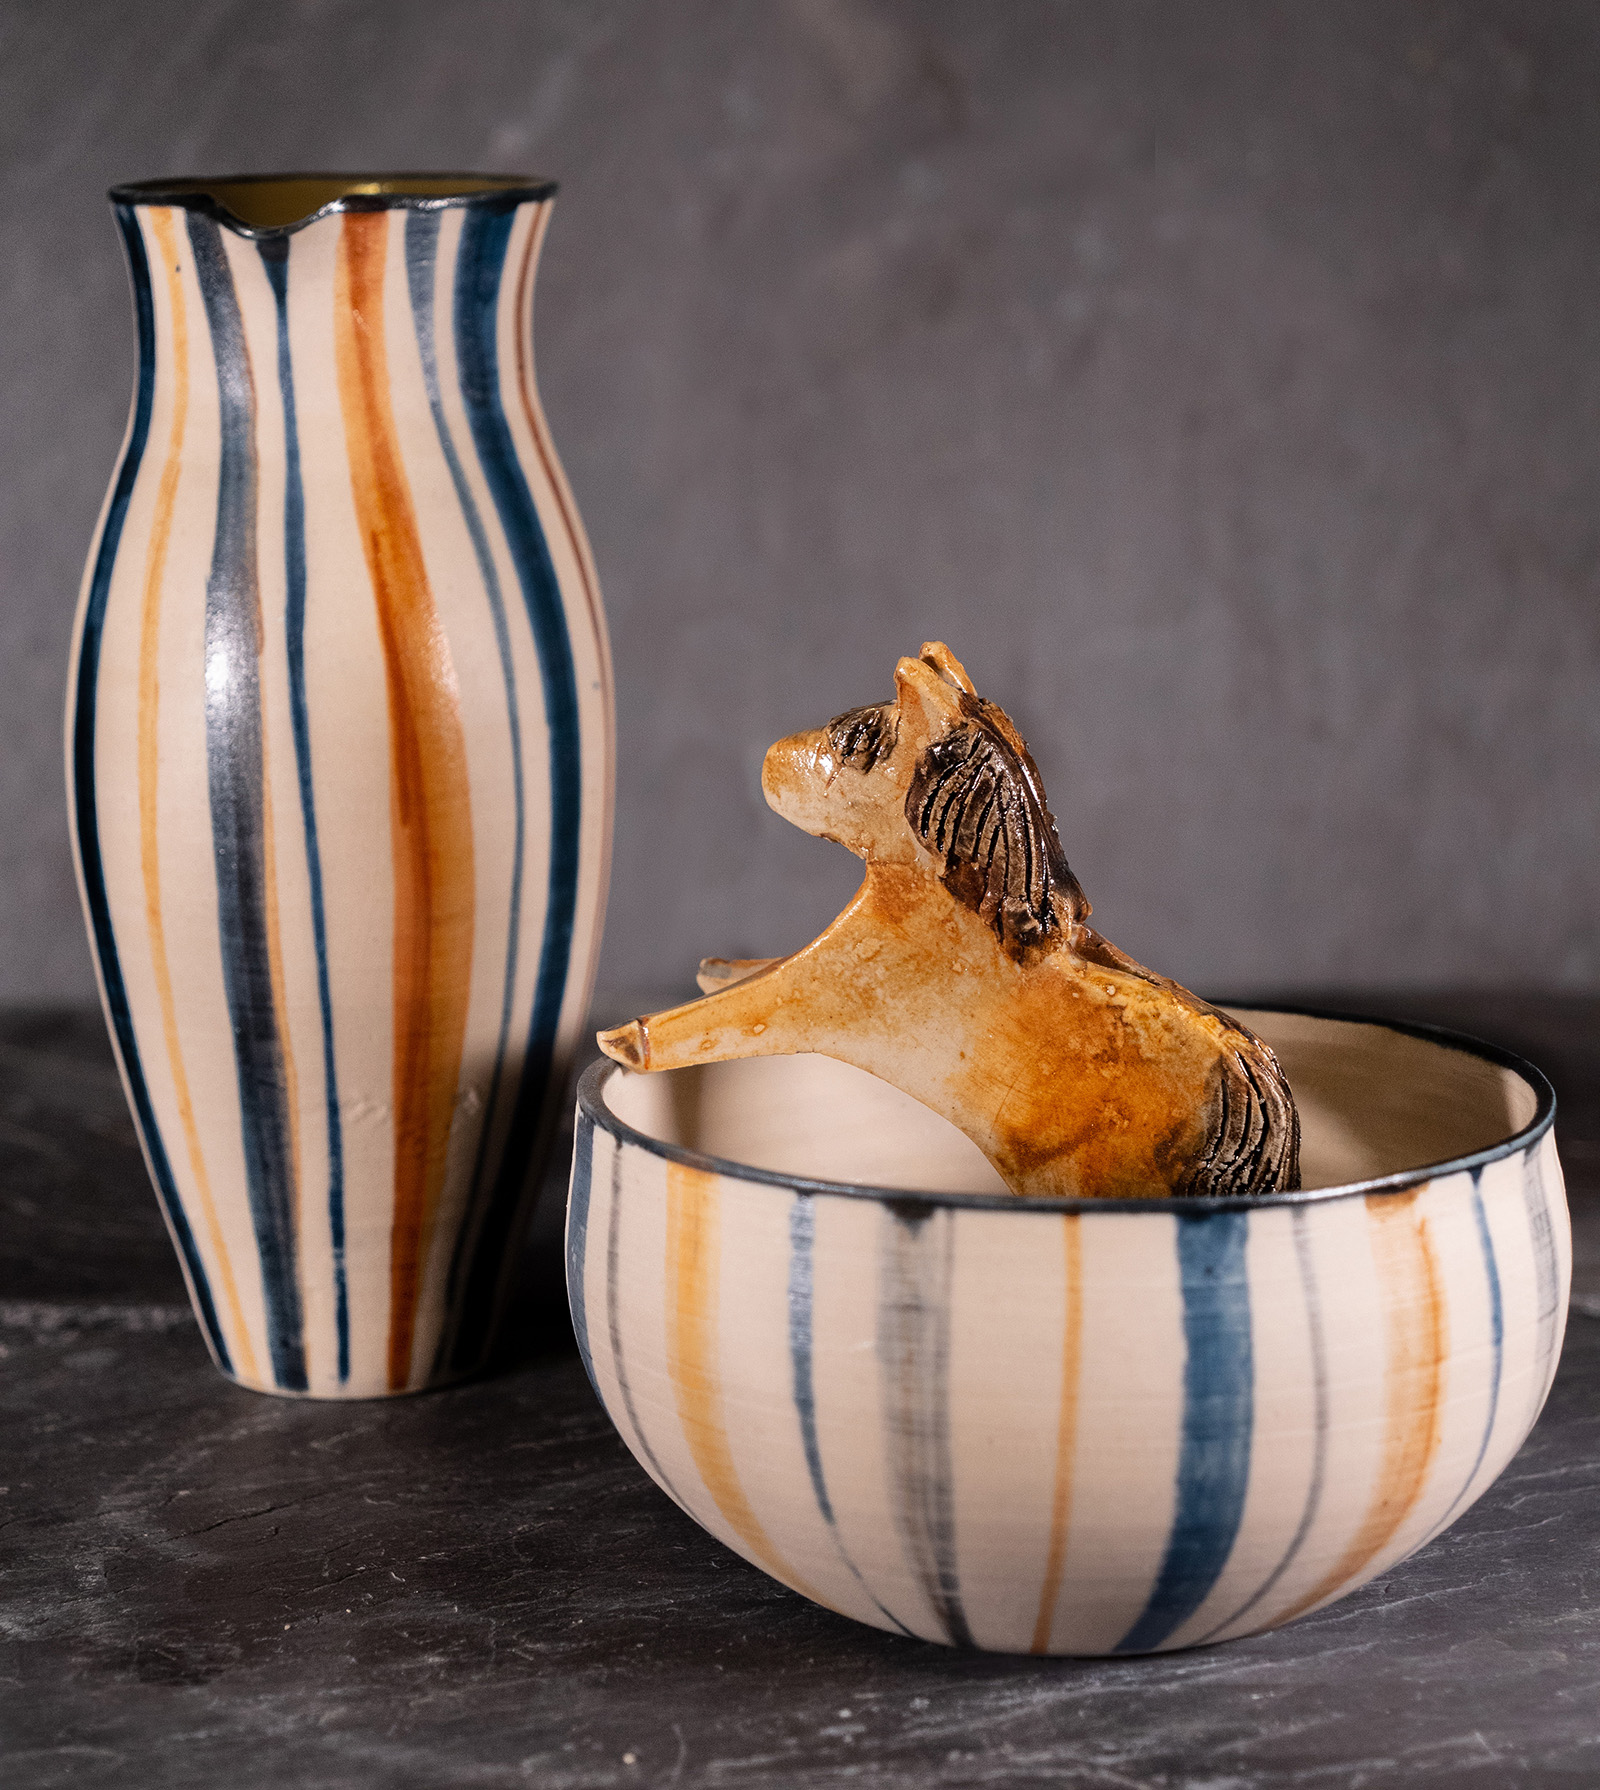 Vase og bolle i hånddreid keramikk i steingodsleire. Keramiker Esther Schenker i Valdres Keramikk Atelier. Foto: Nilsson Cinematics